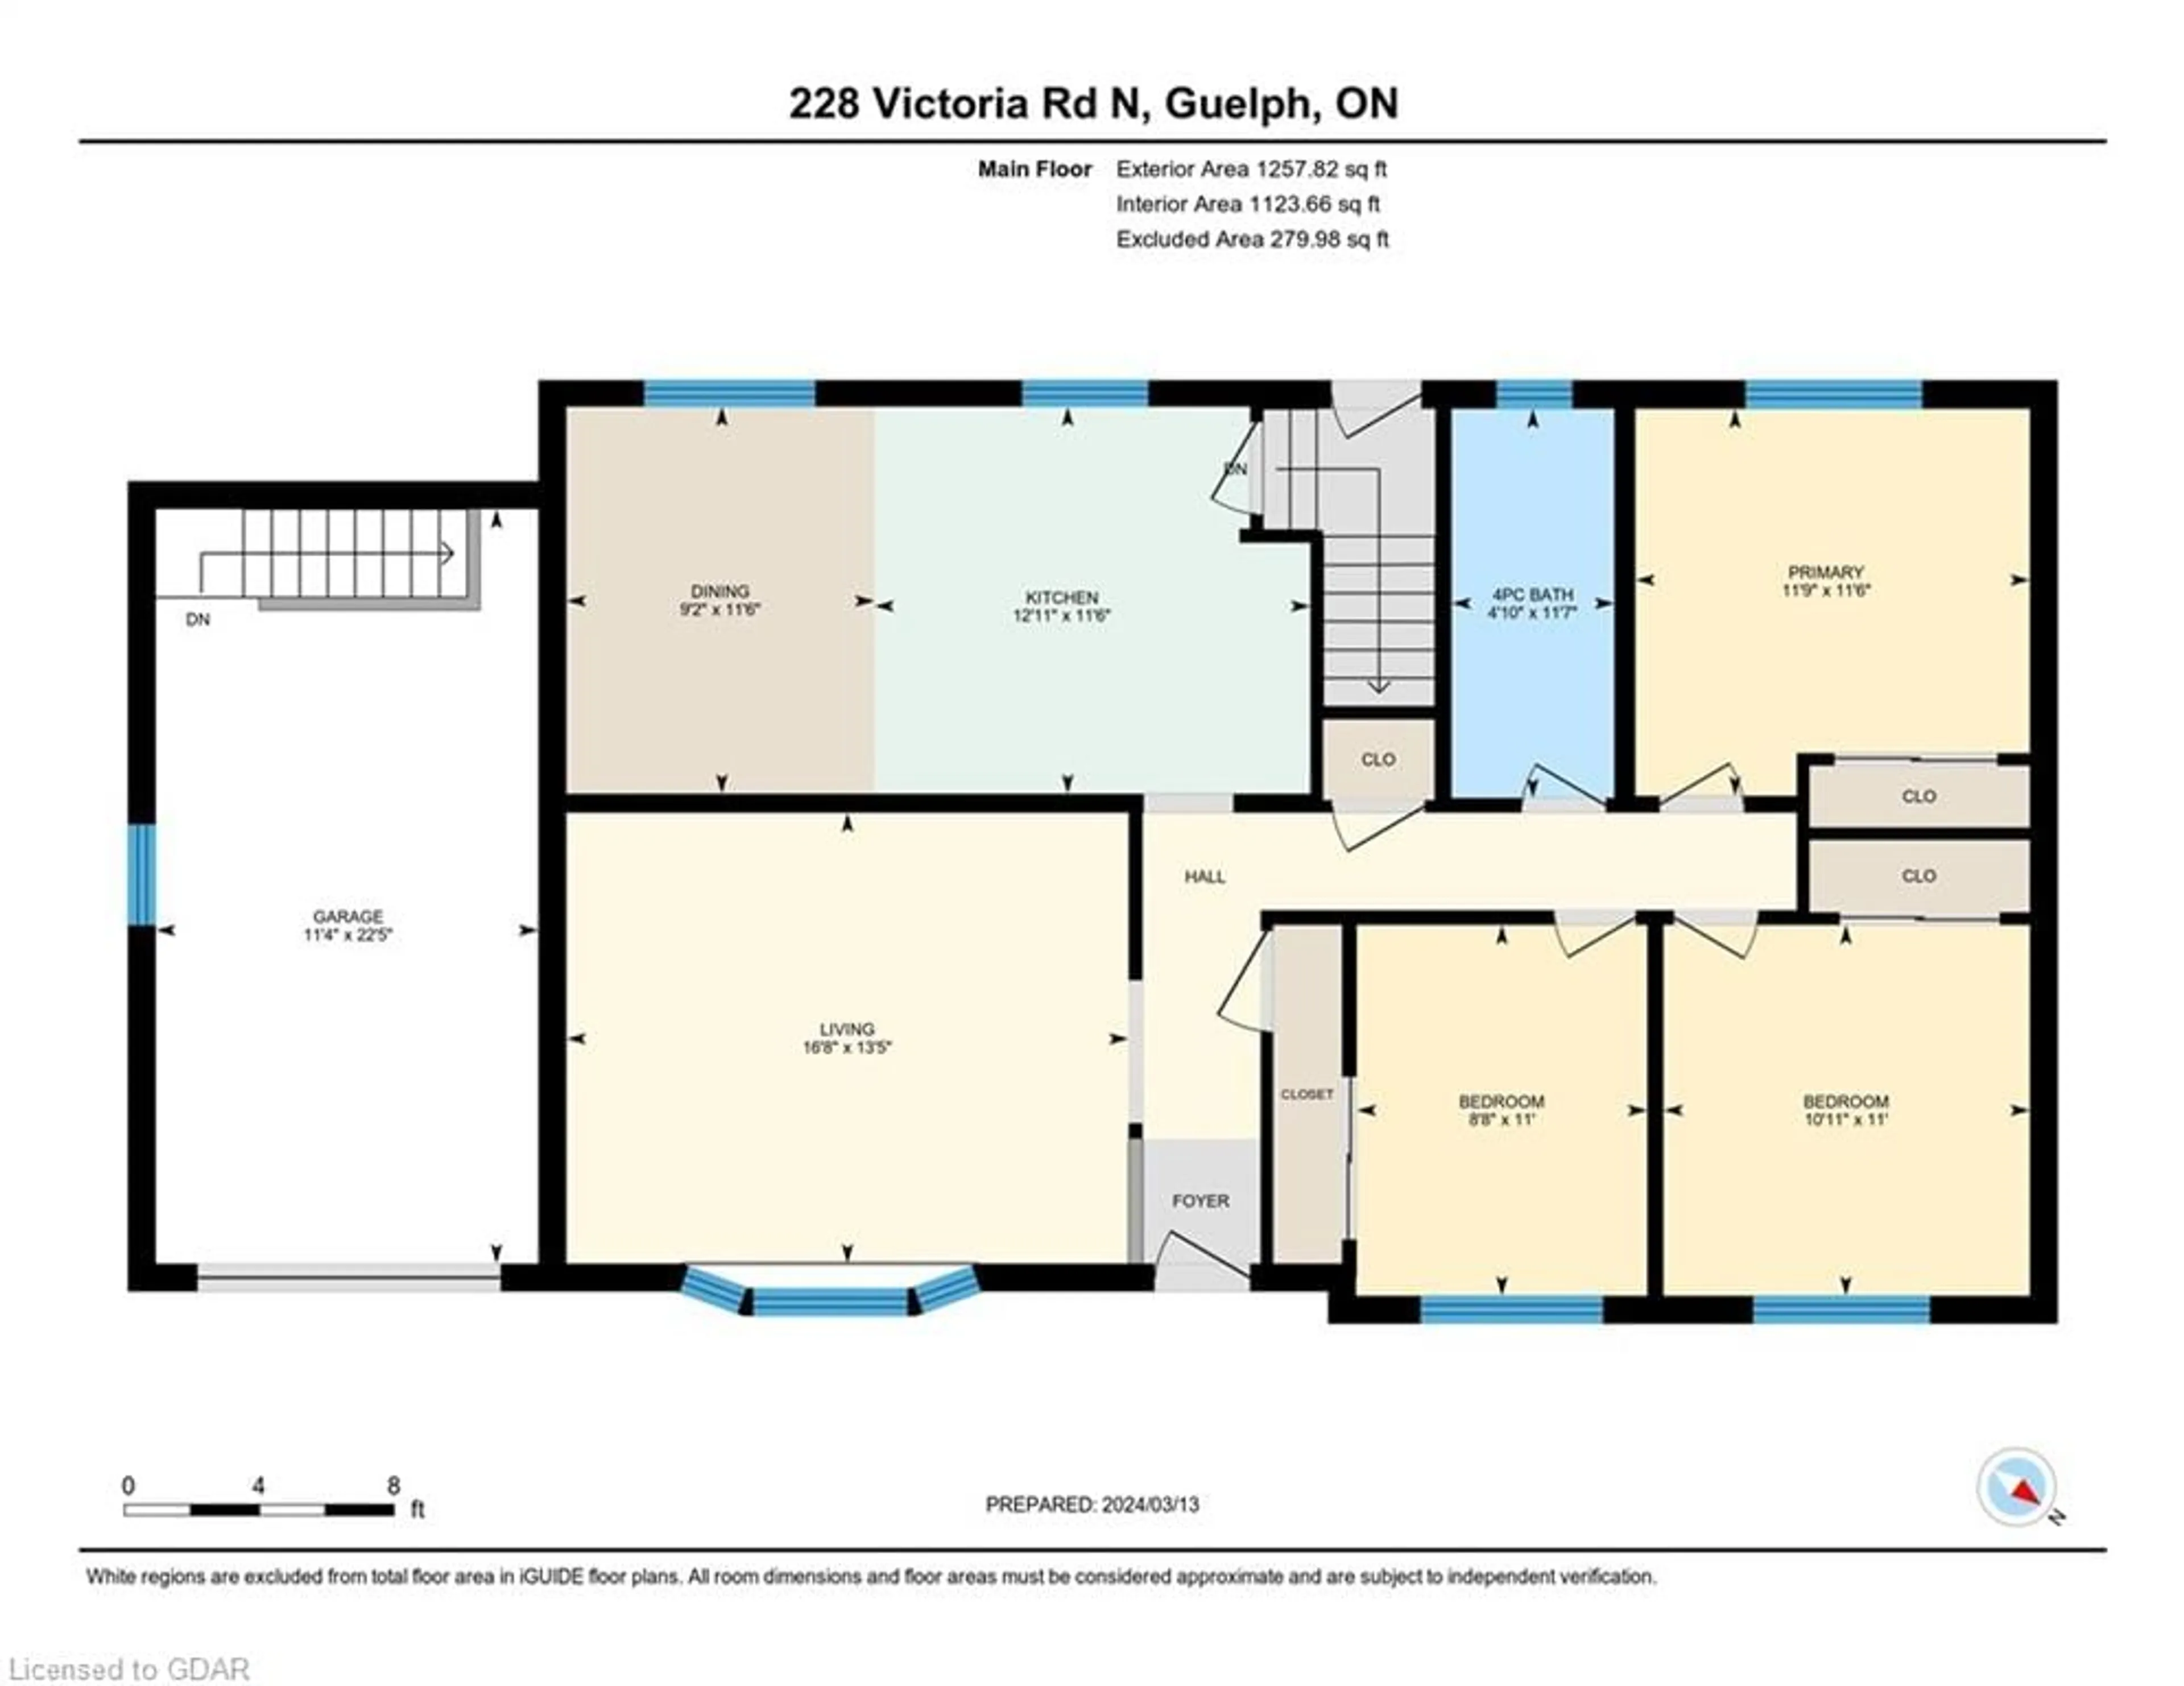 Floor plan for 228 Victoria Rd, Guelph Ontario N1E 5J1